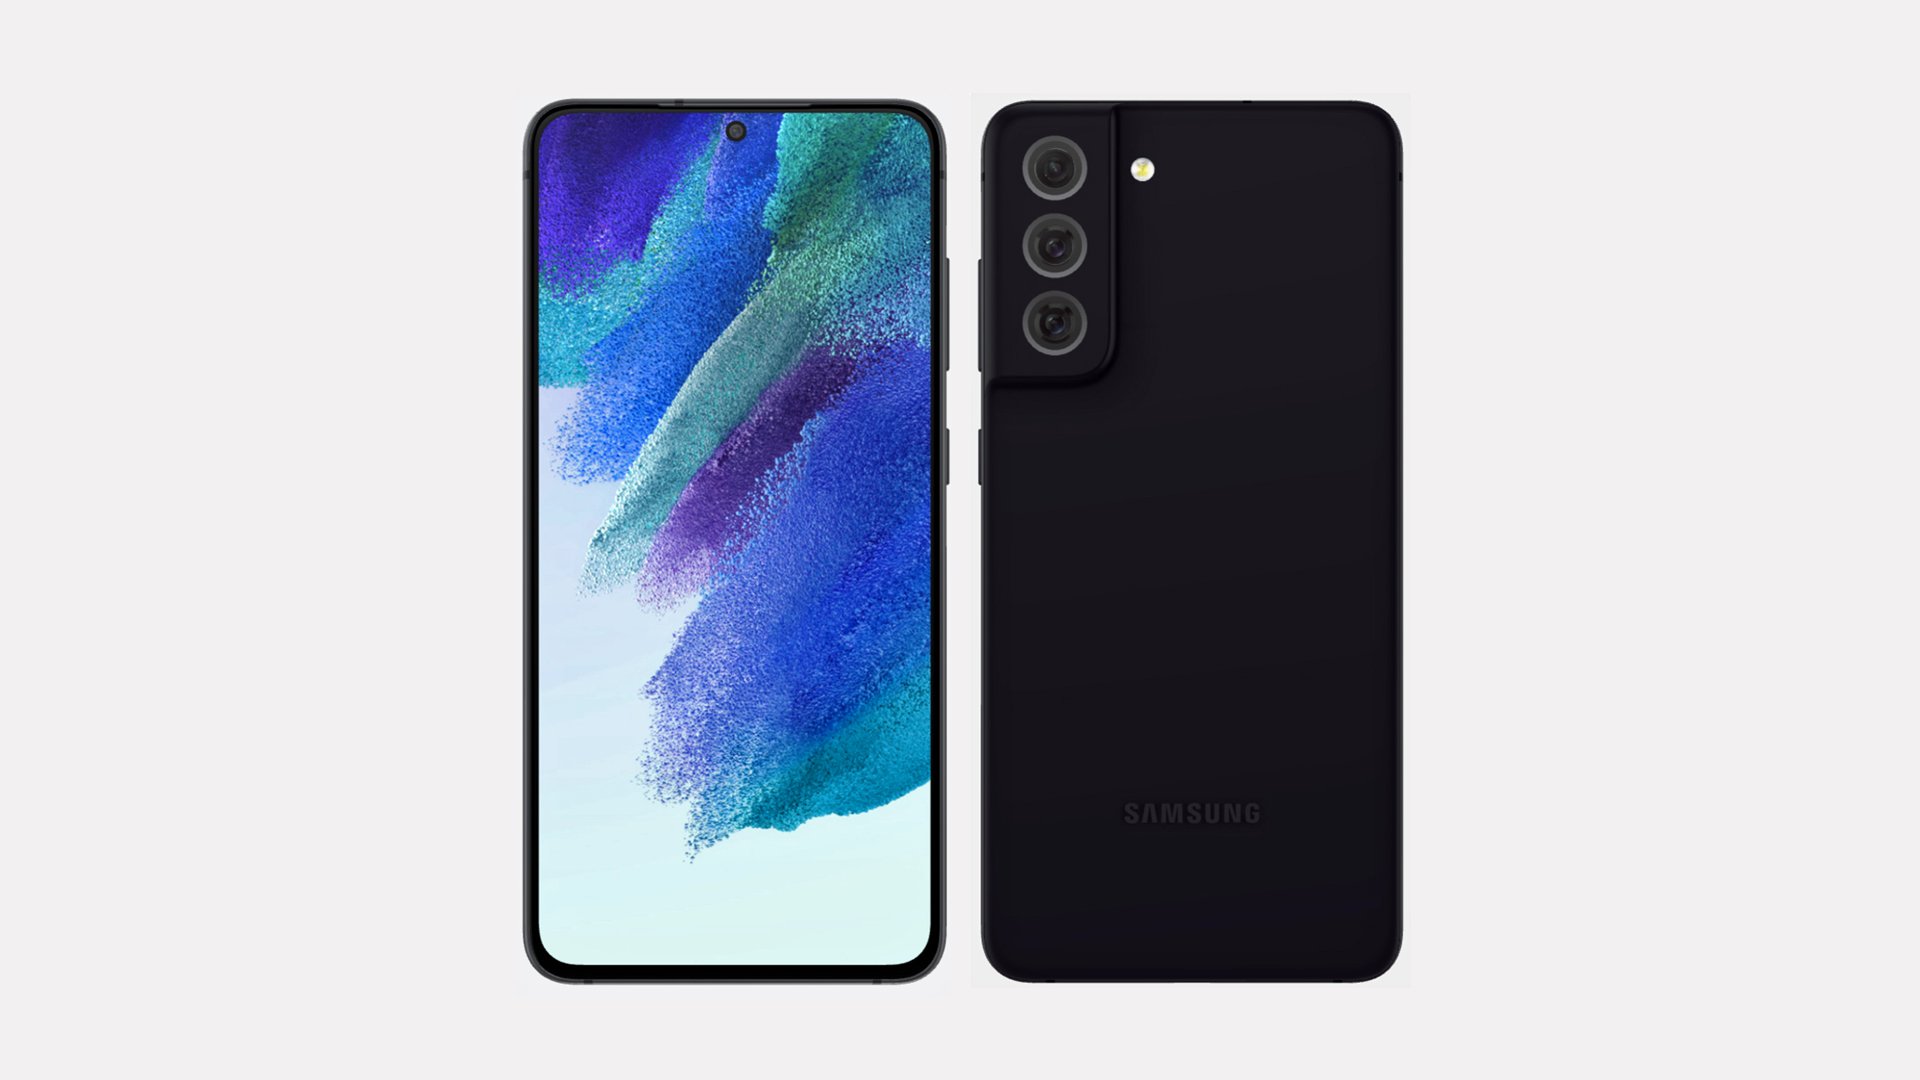 Bạn muốn biết thêm về những thông tin được rò rỉ về Samsung Galaxy S21 FE? Xem ngay một số tài liệu tiếp thị mới nhất để có thể tìm hiểu thêm về sản phẩm này và xác nhận những thông tin đang đi đúng hướng hay không!